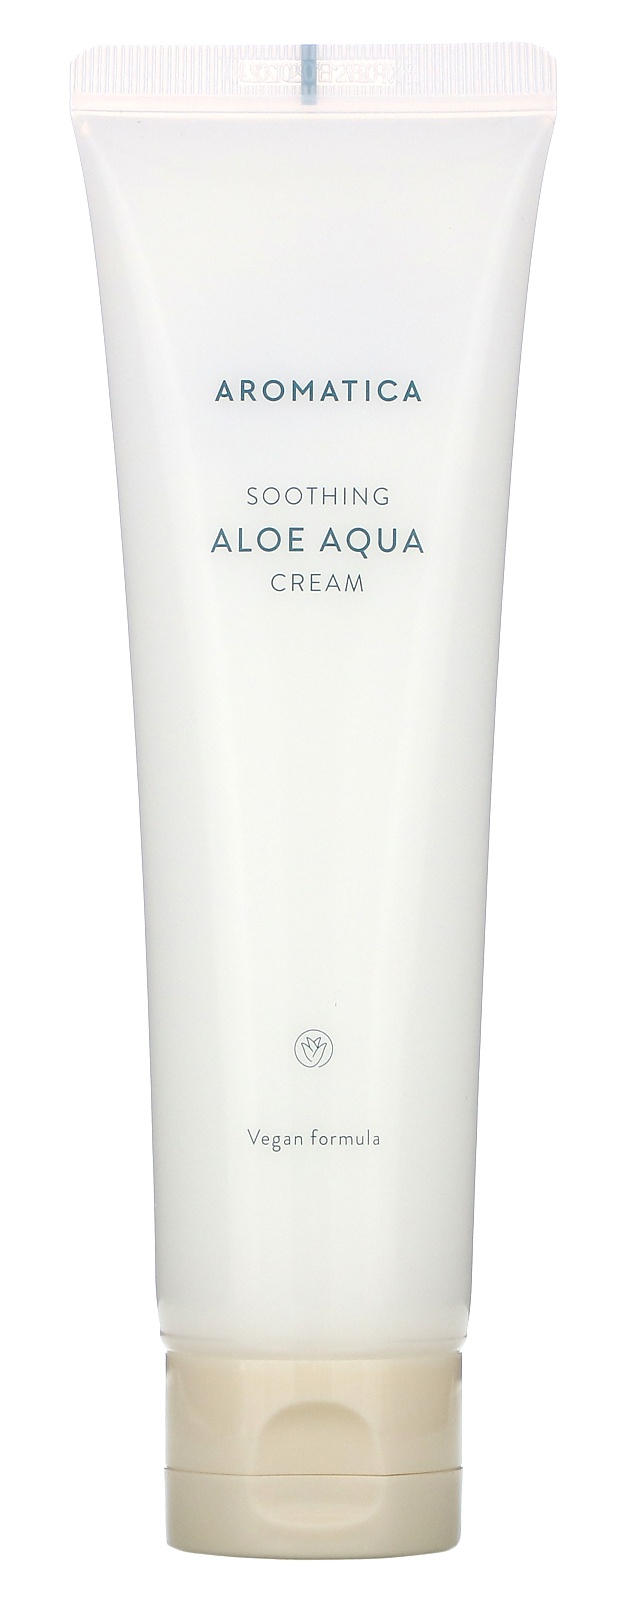 Aromatica Soothing Aloe Aqua Cream